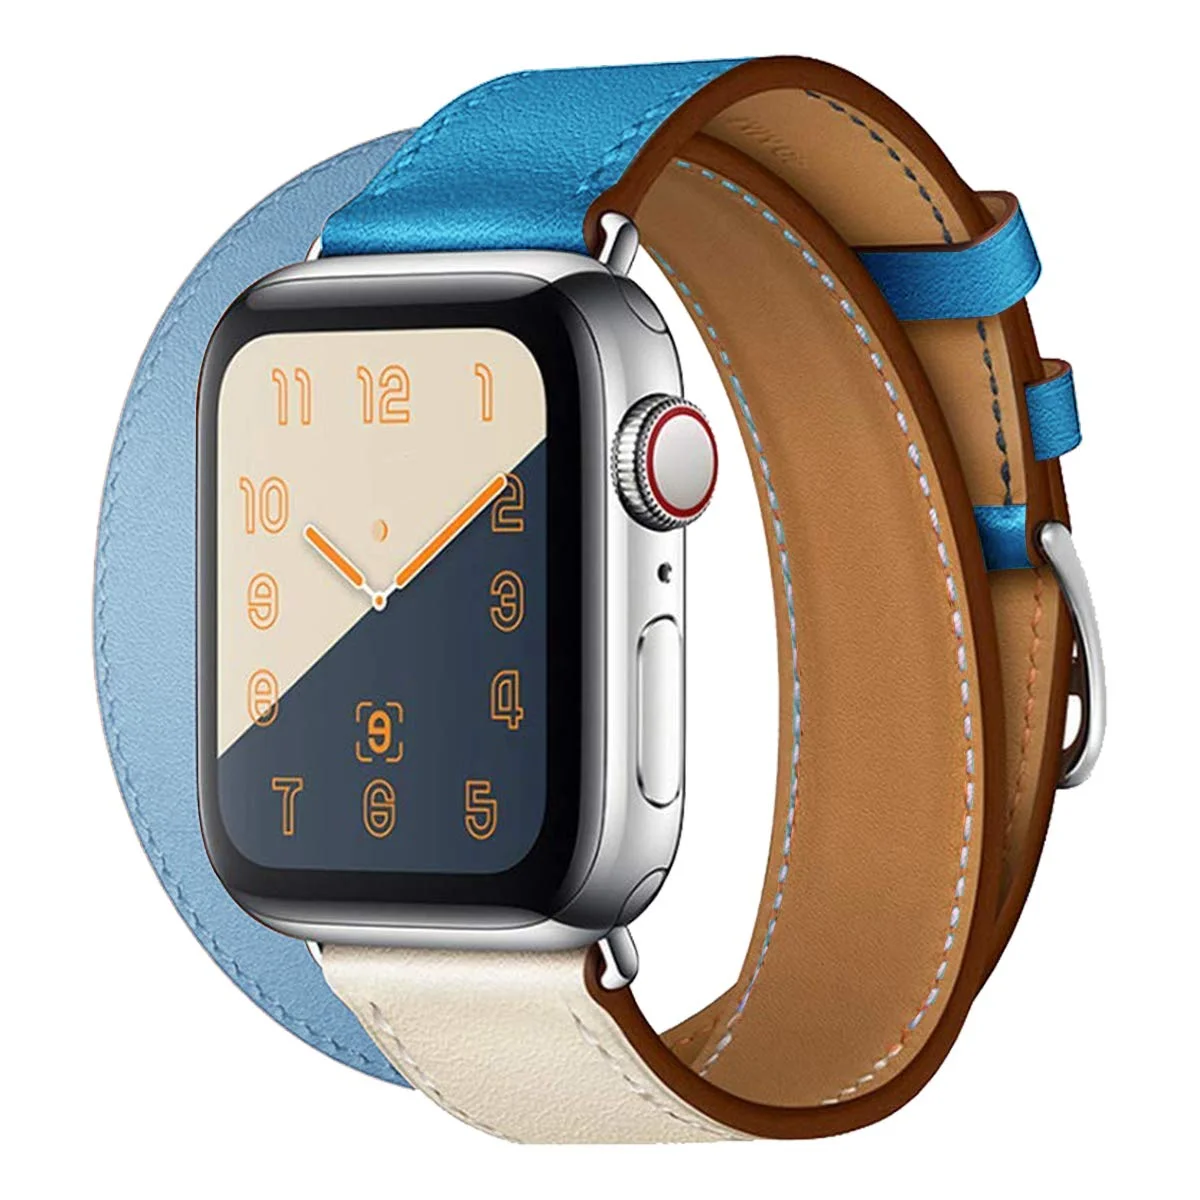 Řemínek iMore Double Tour Apple Watch Series 4/5/6/SE (44mm) - Béžový/Modrý